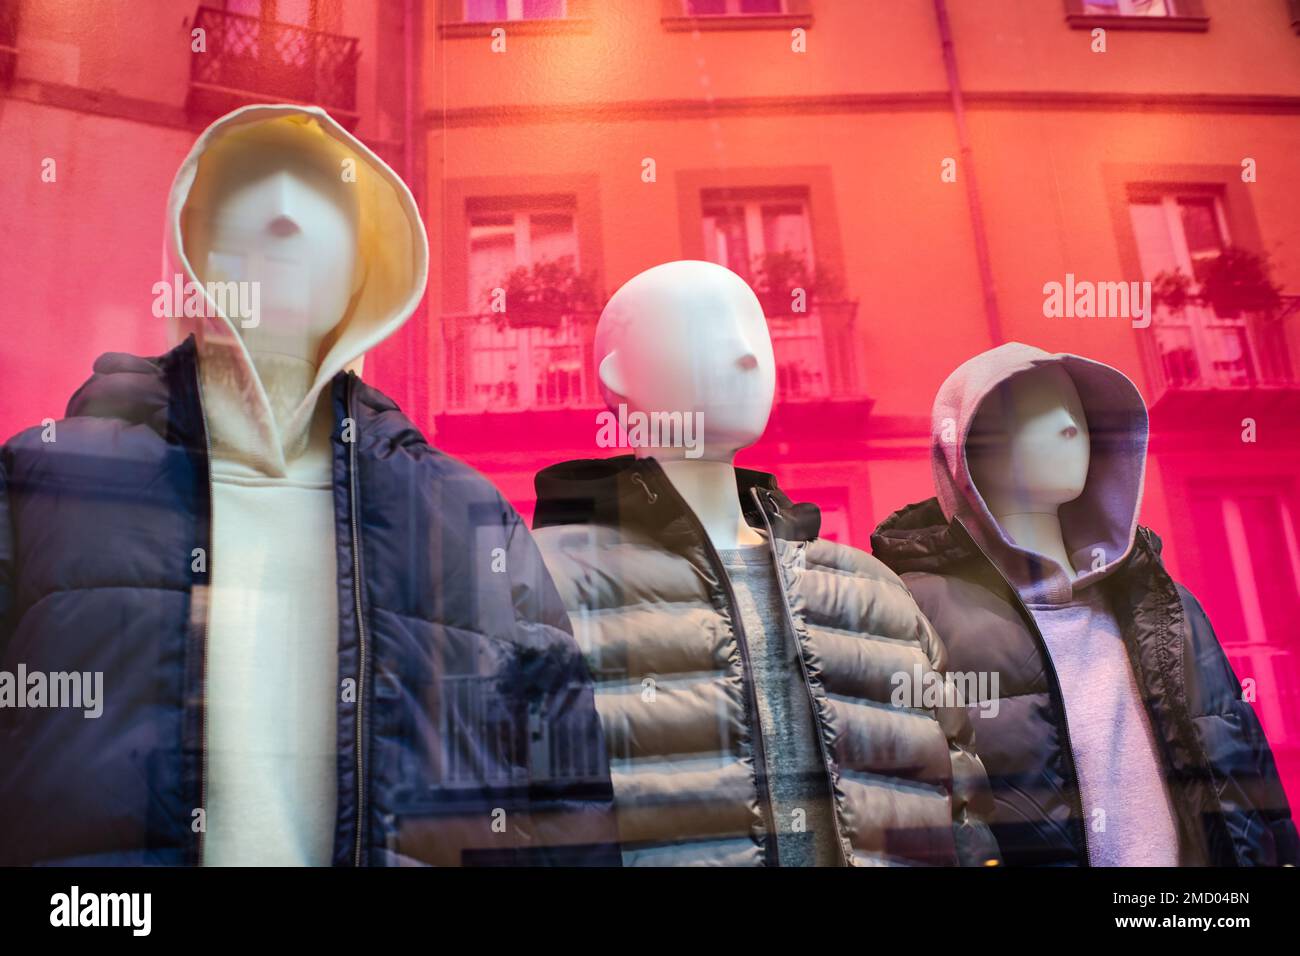 Gruppo di tre manichini in un negozio di moda con come sfondo un edificio residenziale Foto Stock